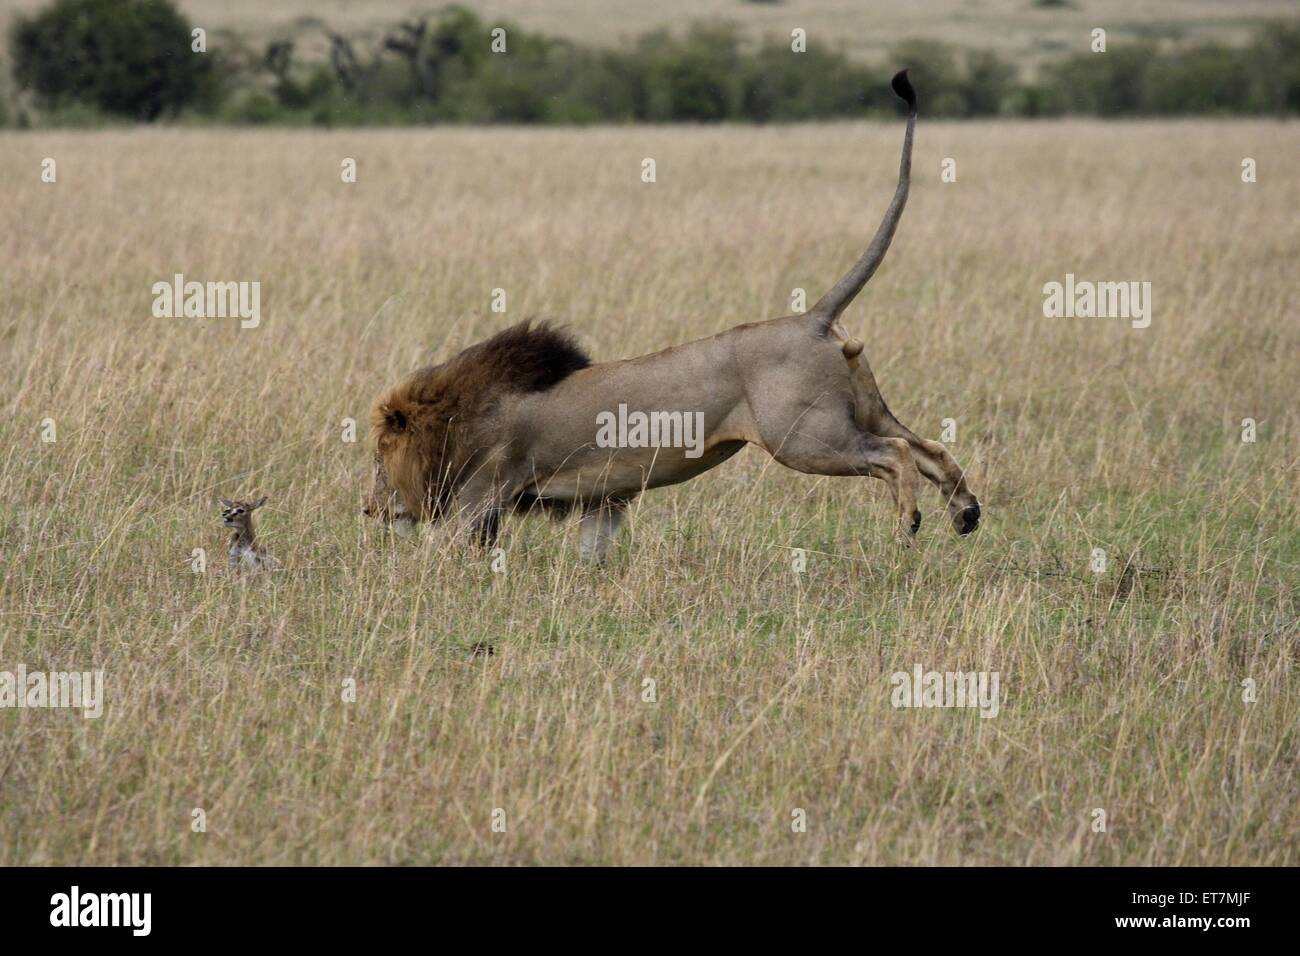 Loewe (Panthera leo), Maennchen faengt in der Savanne ein im trockenen Gras sitzendes Gazellenkitz, Kenia, Masai Mara Nationalpa Stock Photo